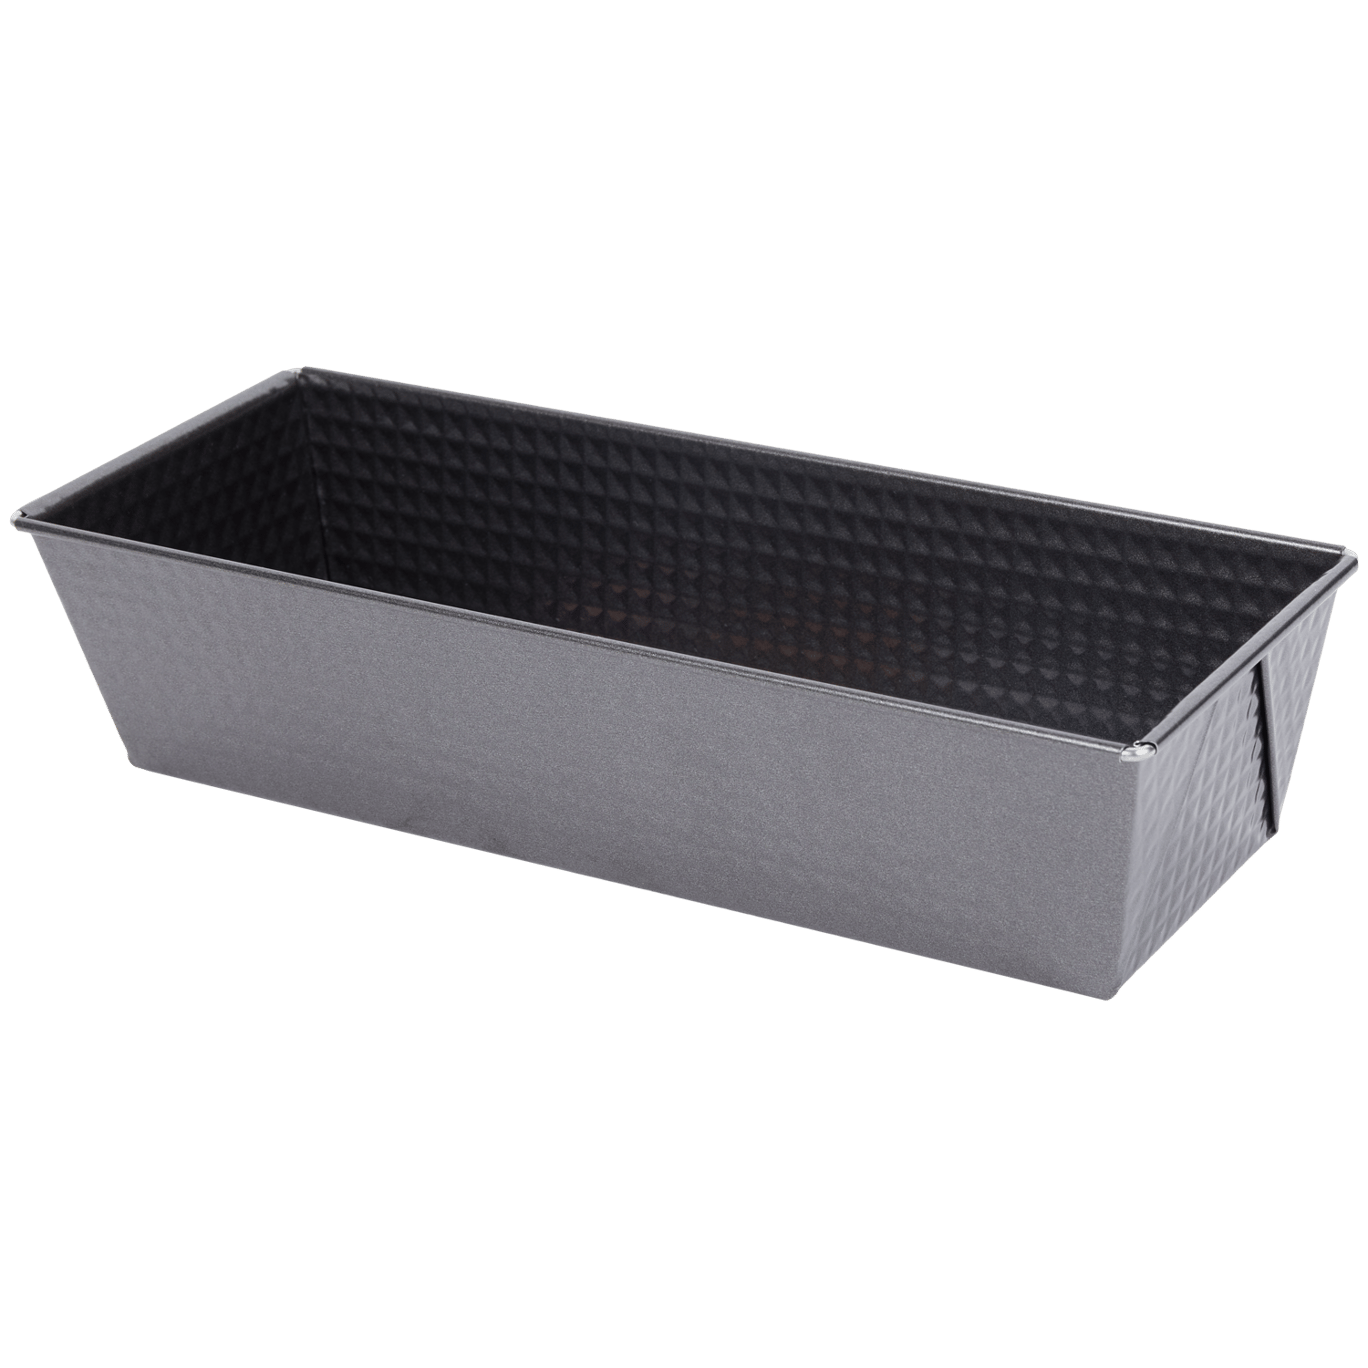 Zenker ® Molde rectangular desmontable